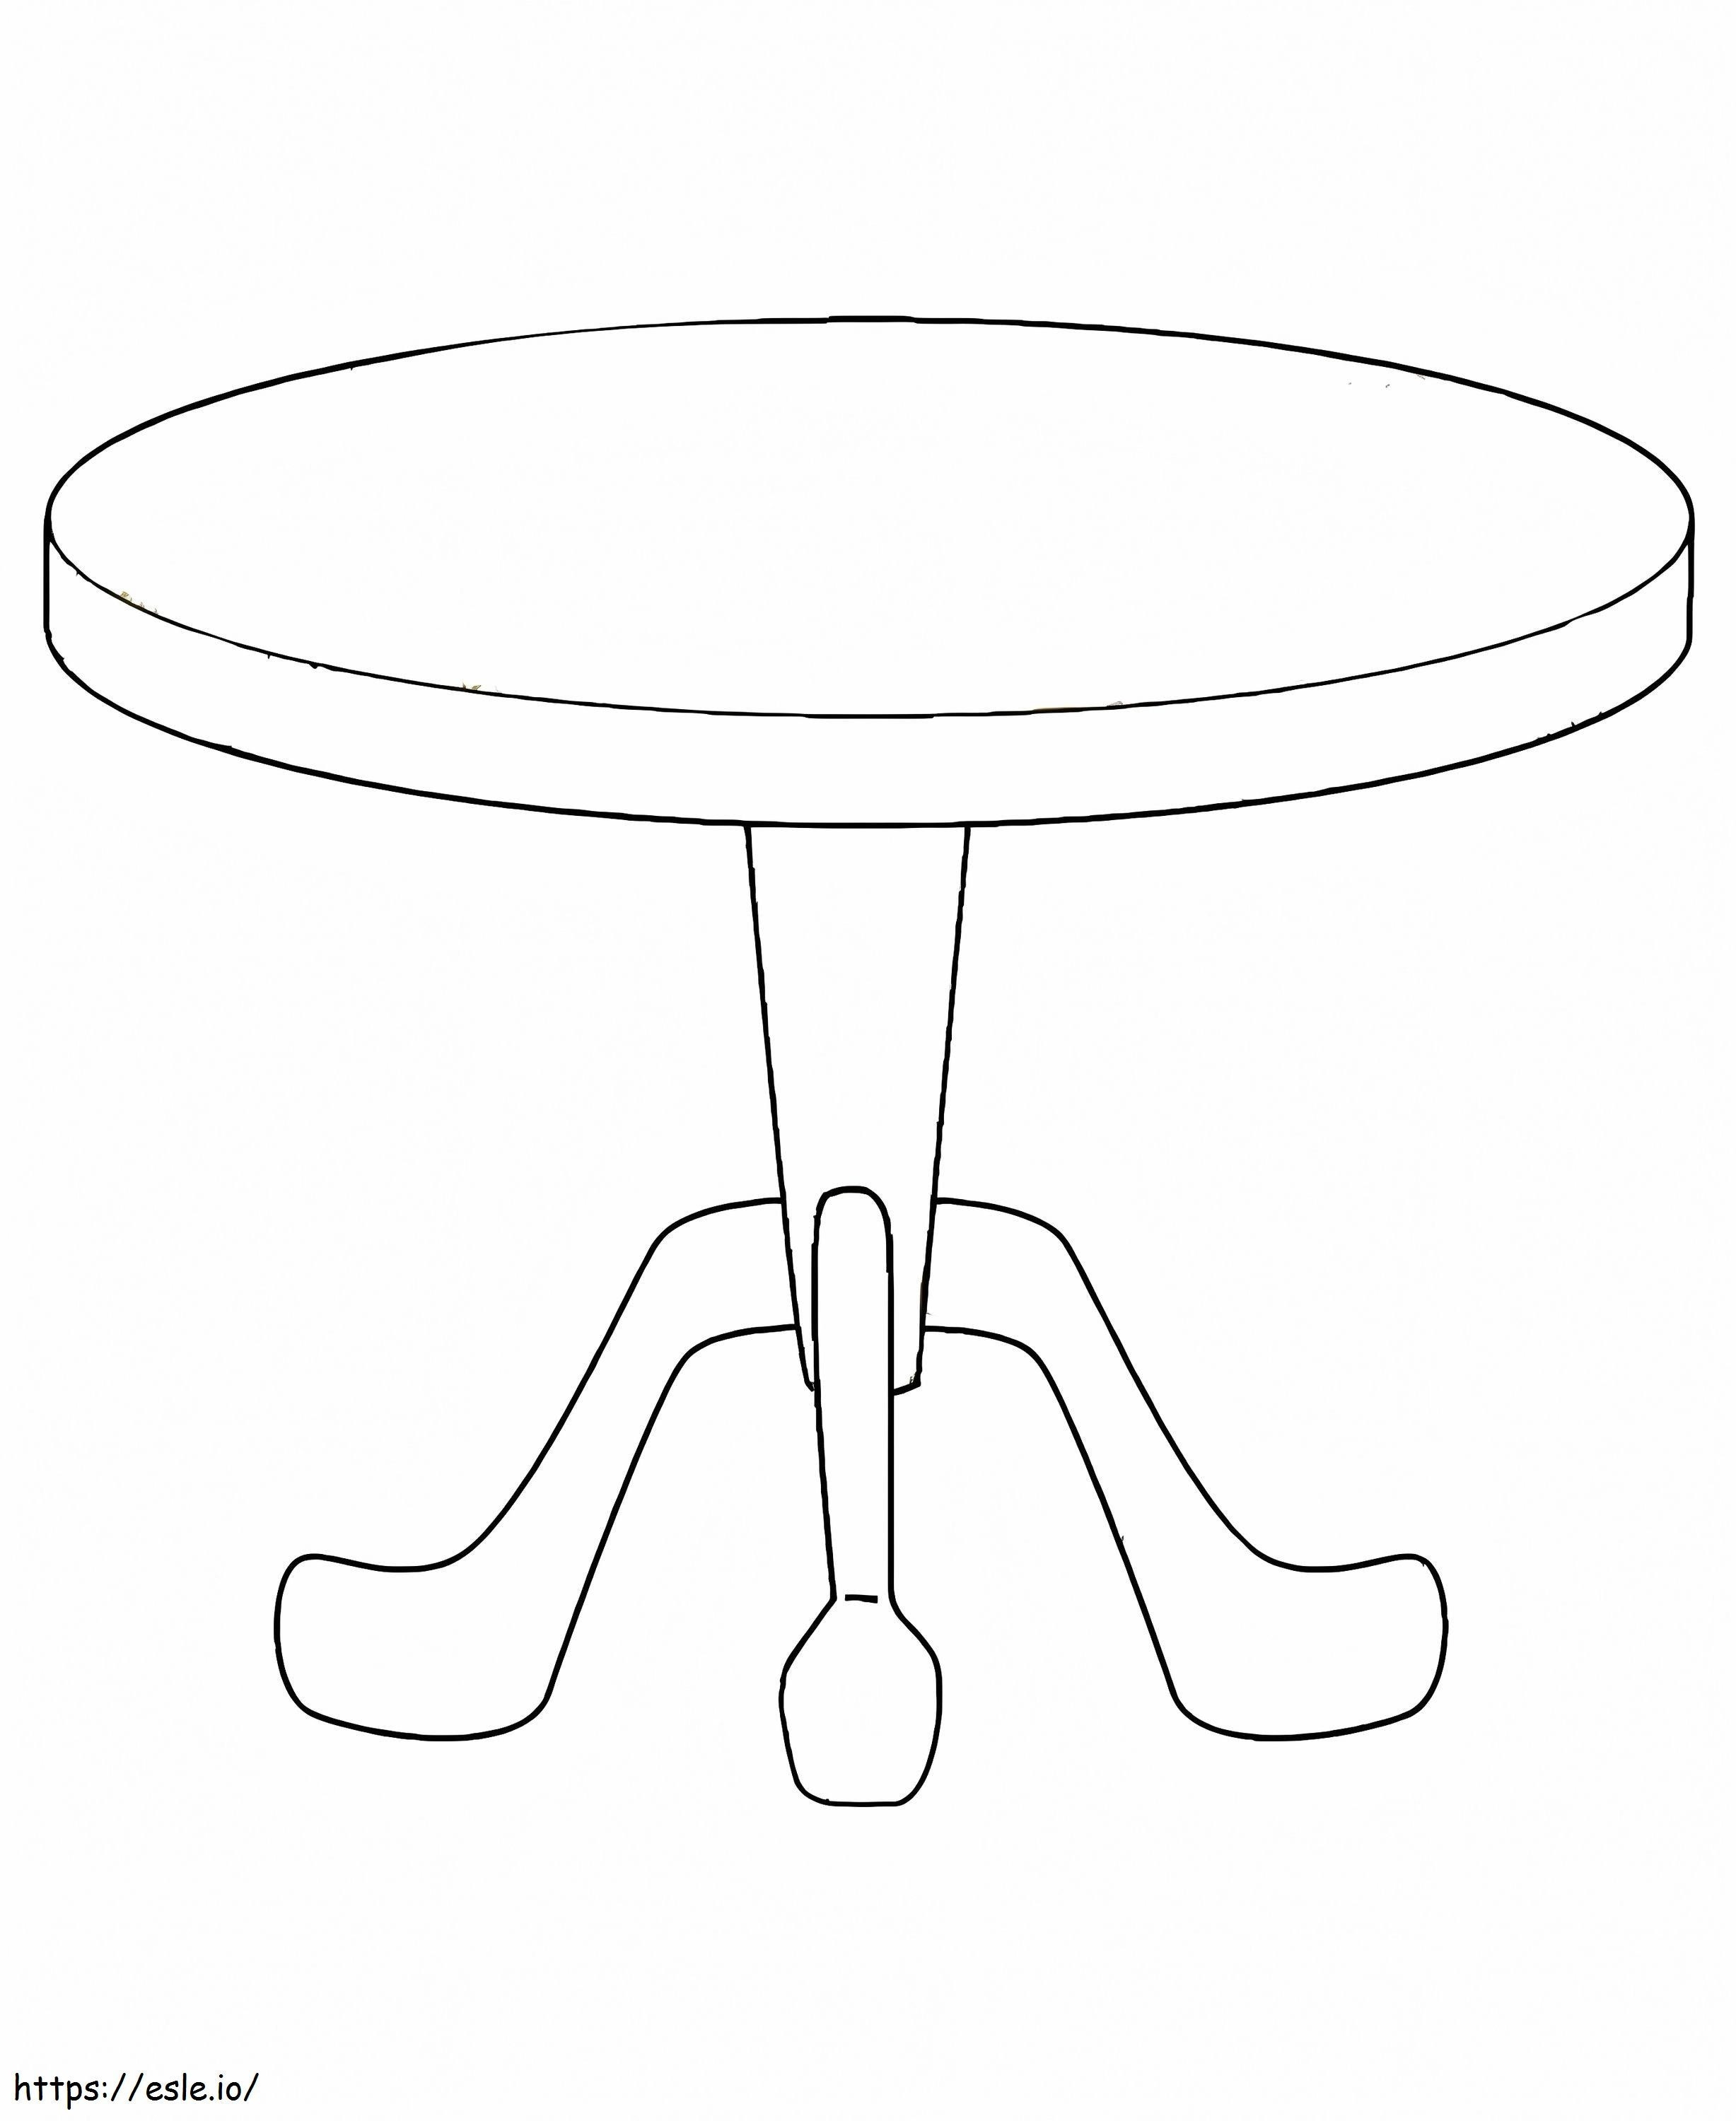 Coloriage Table ronde simple à imprimer dessin